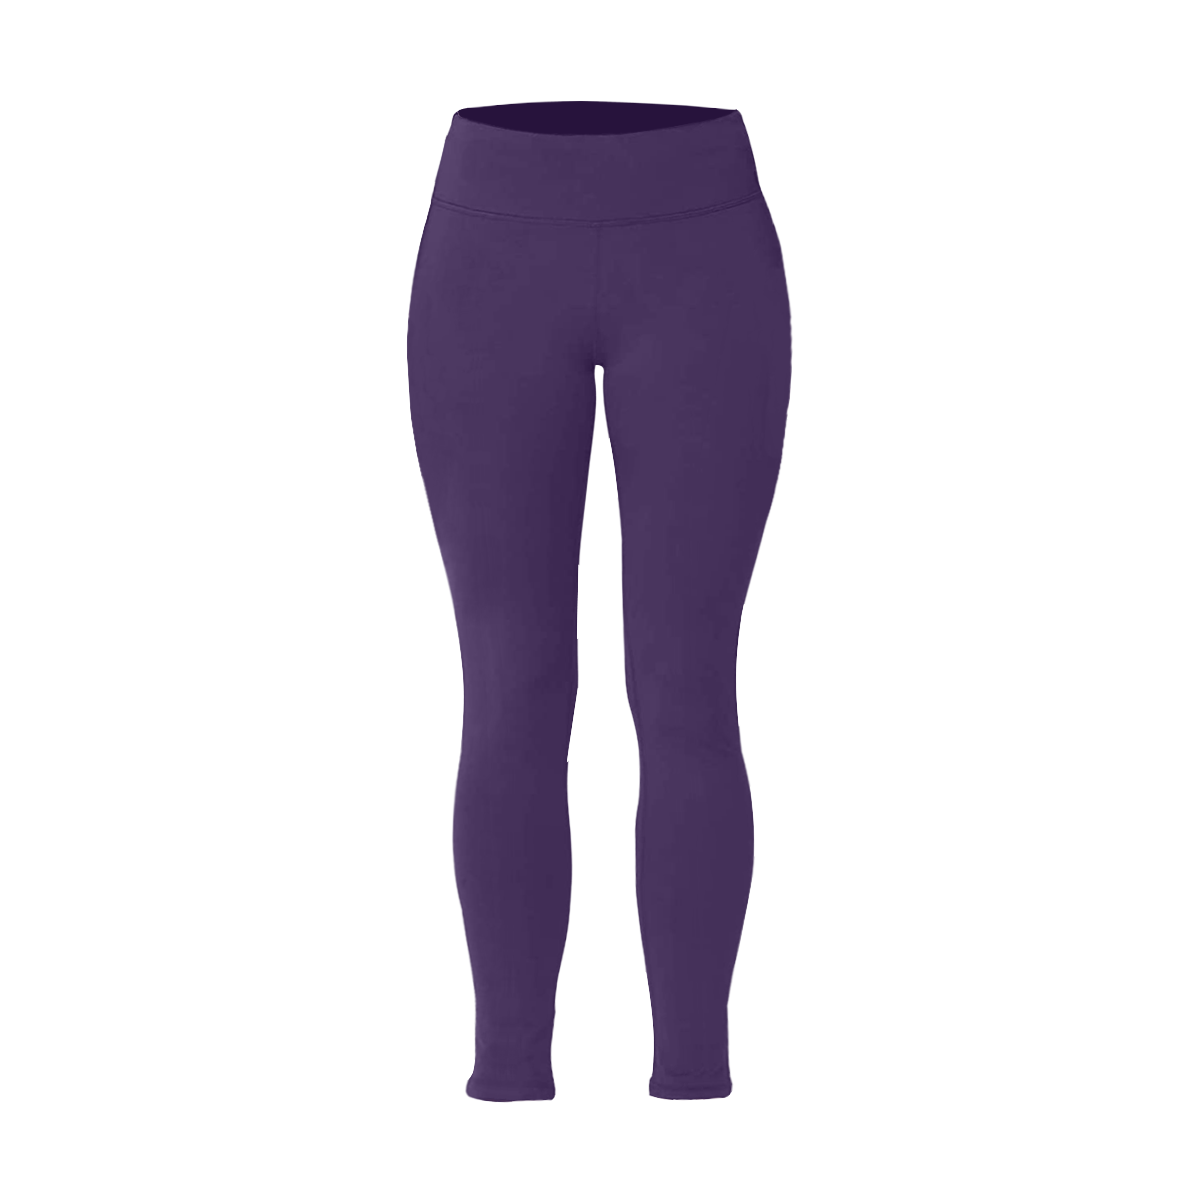 color Russian violet Women's Plus Size High Waist Leggings (Model L44)